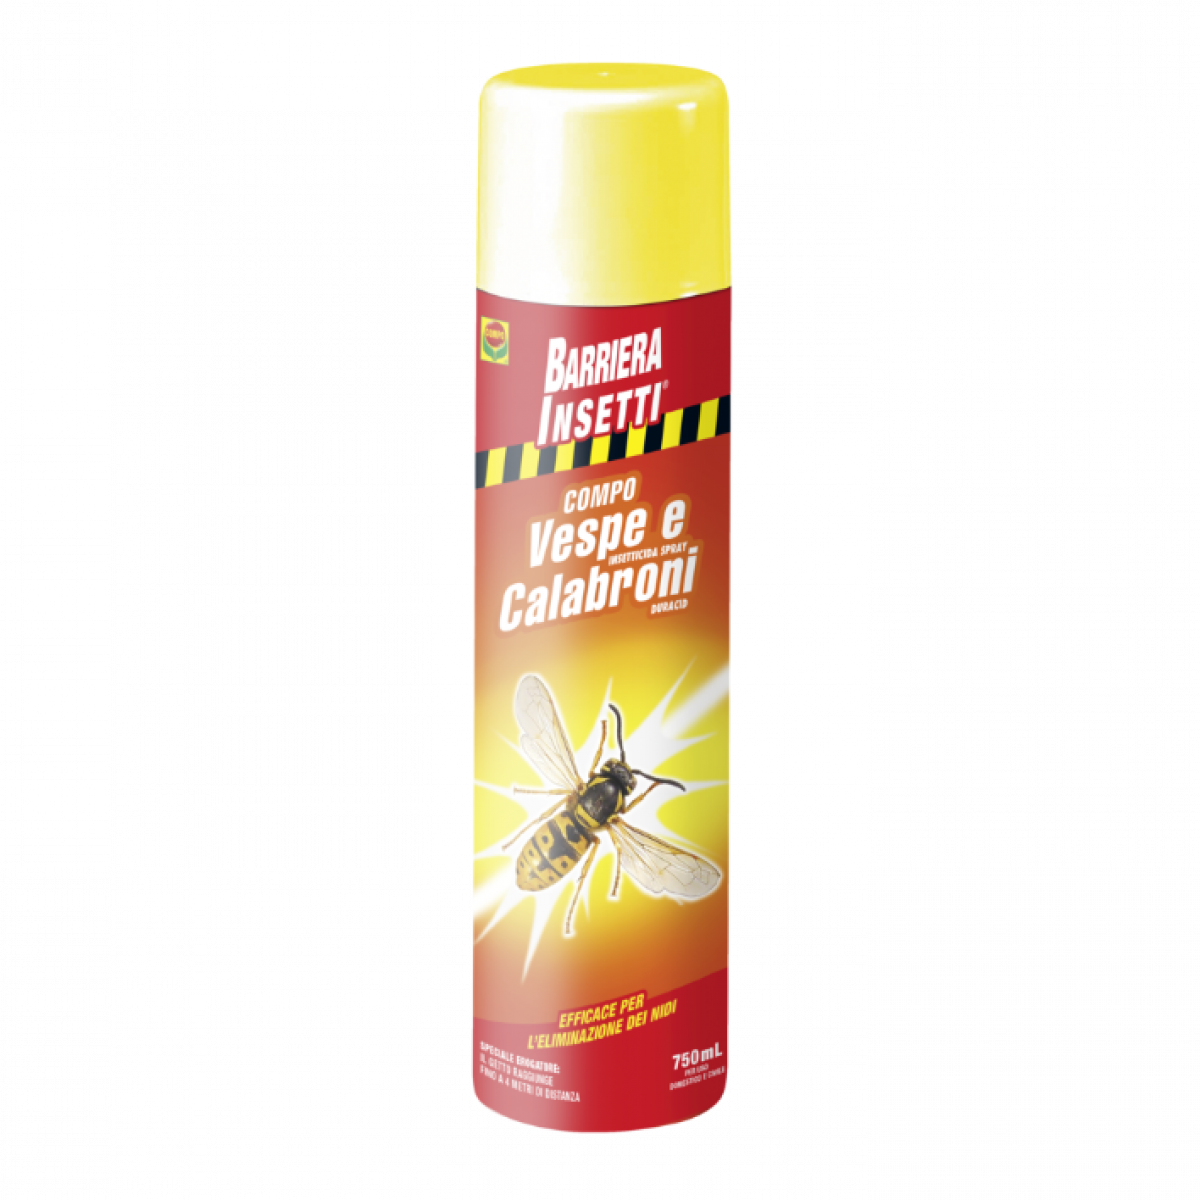 Barriera insetti spray vespe e calabroni Compo - 750 ml 